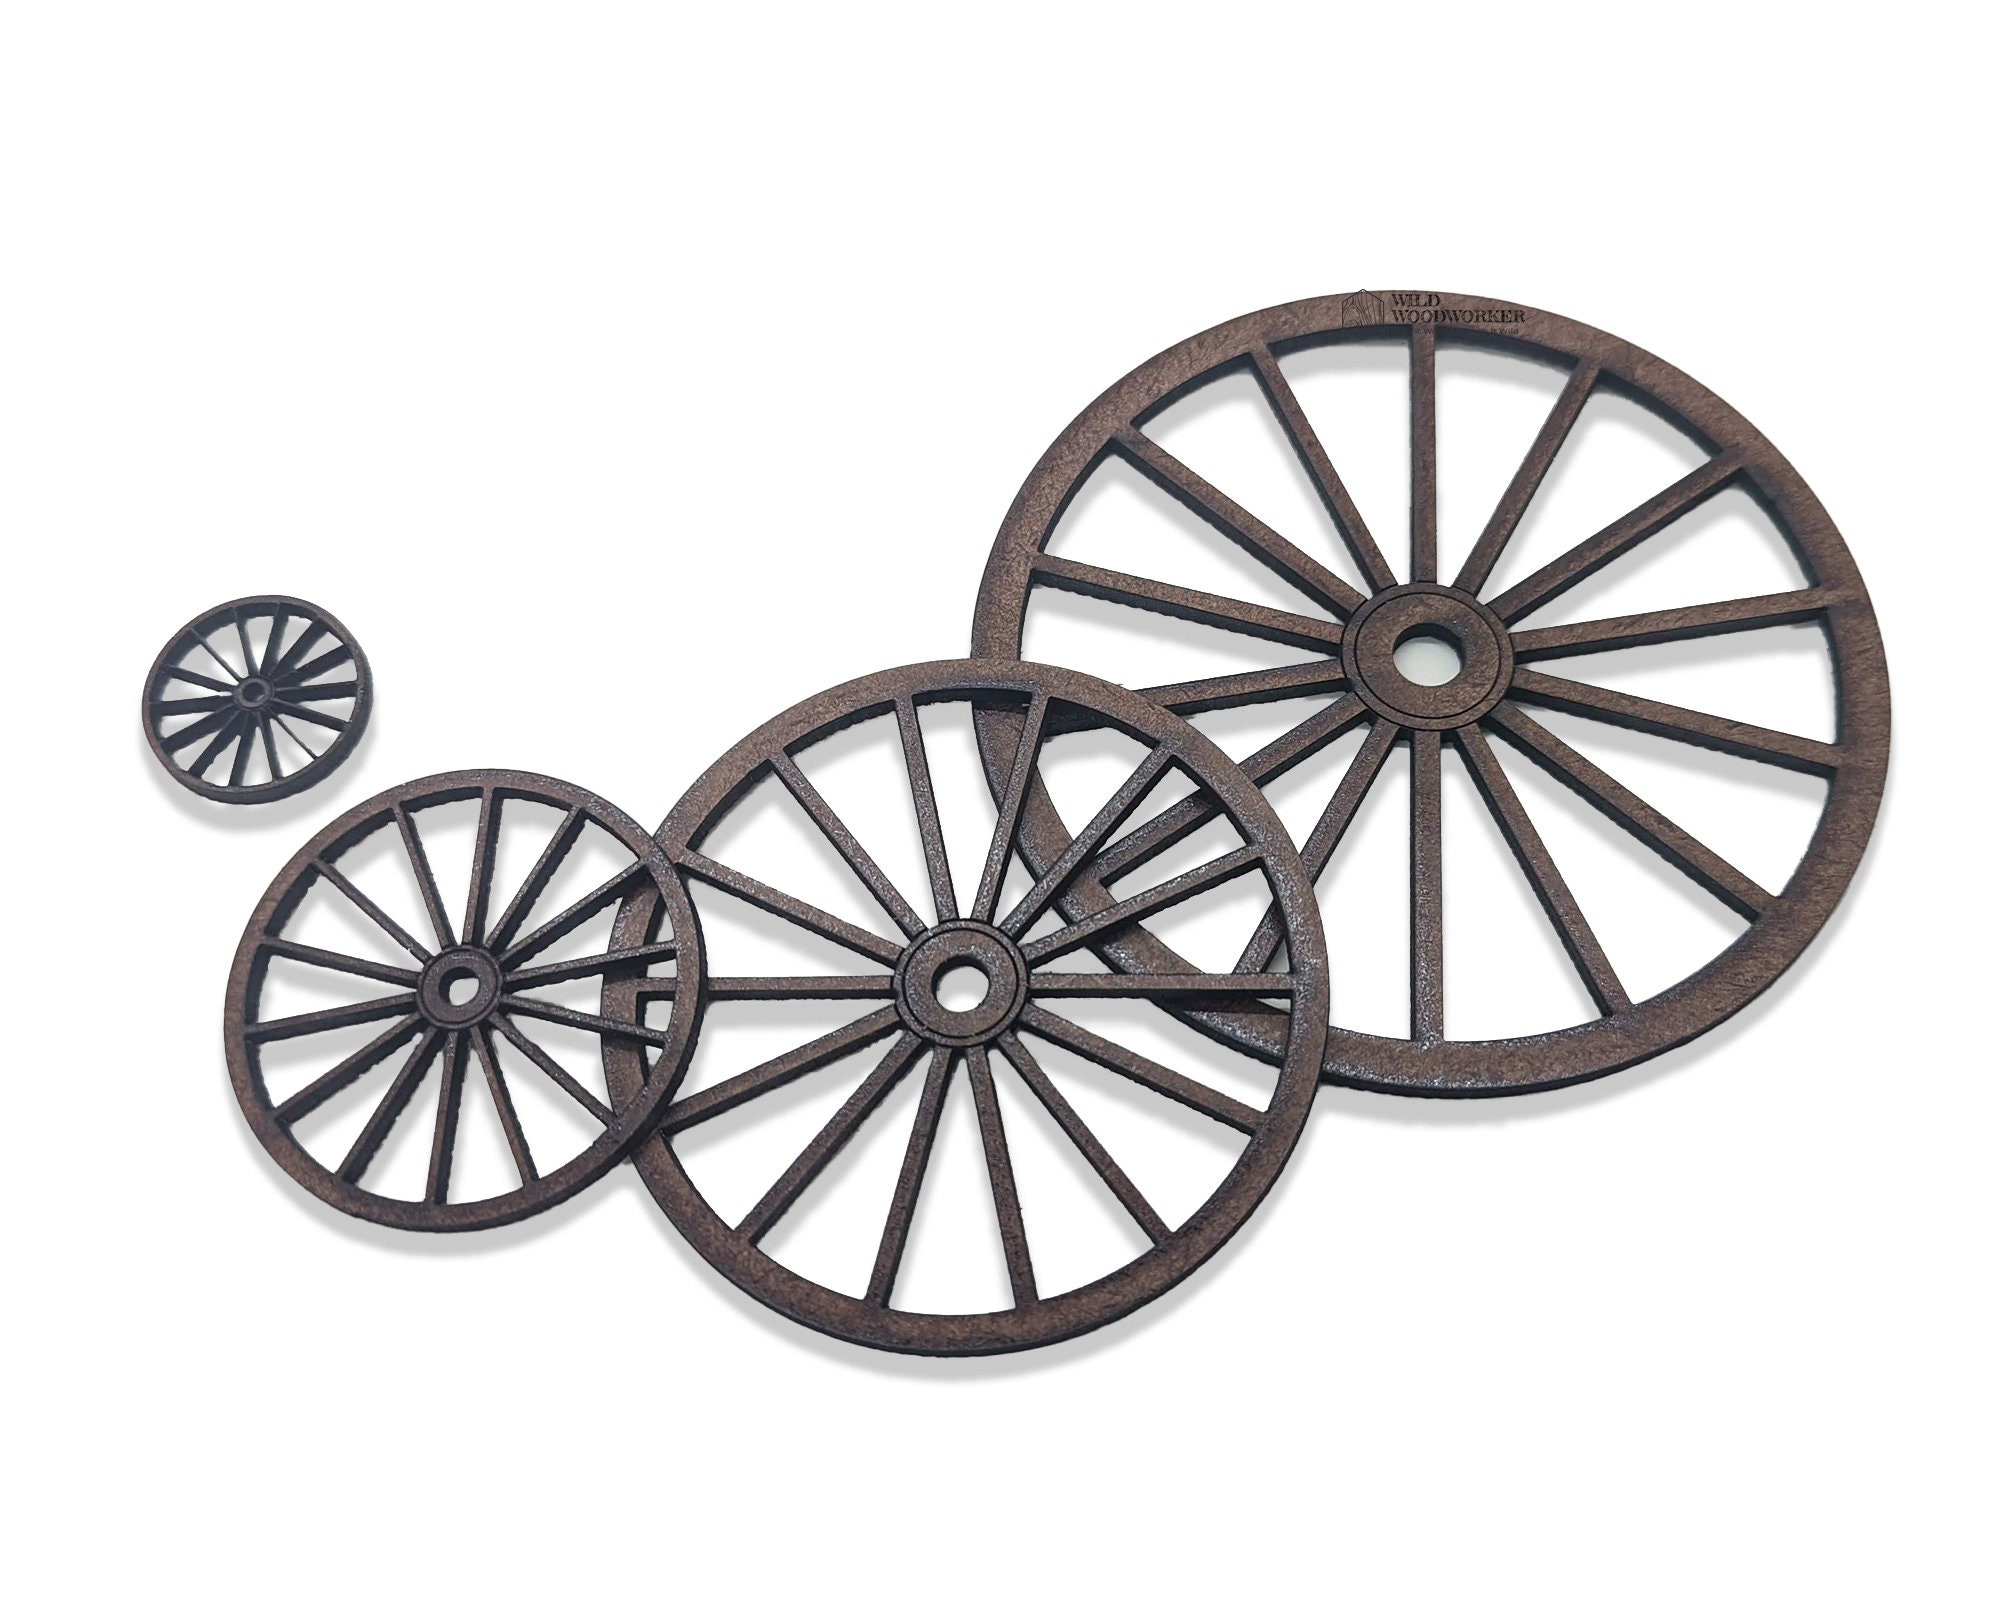 Spoke wheels wooden for sale  